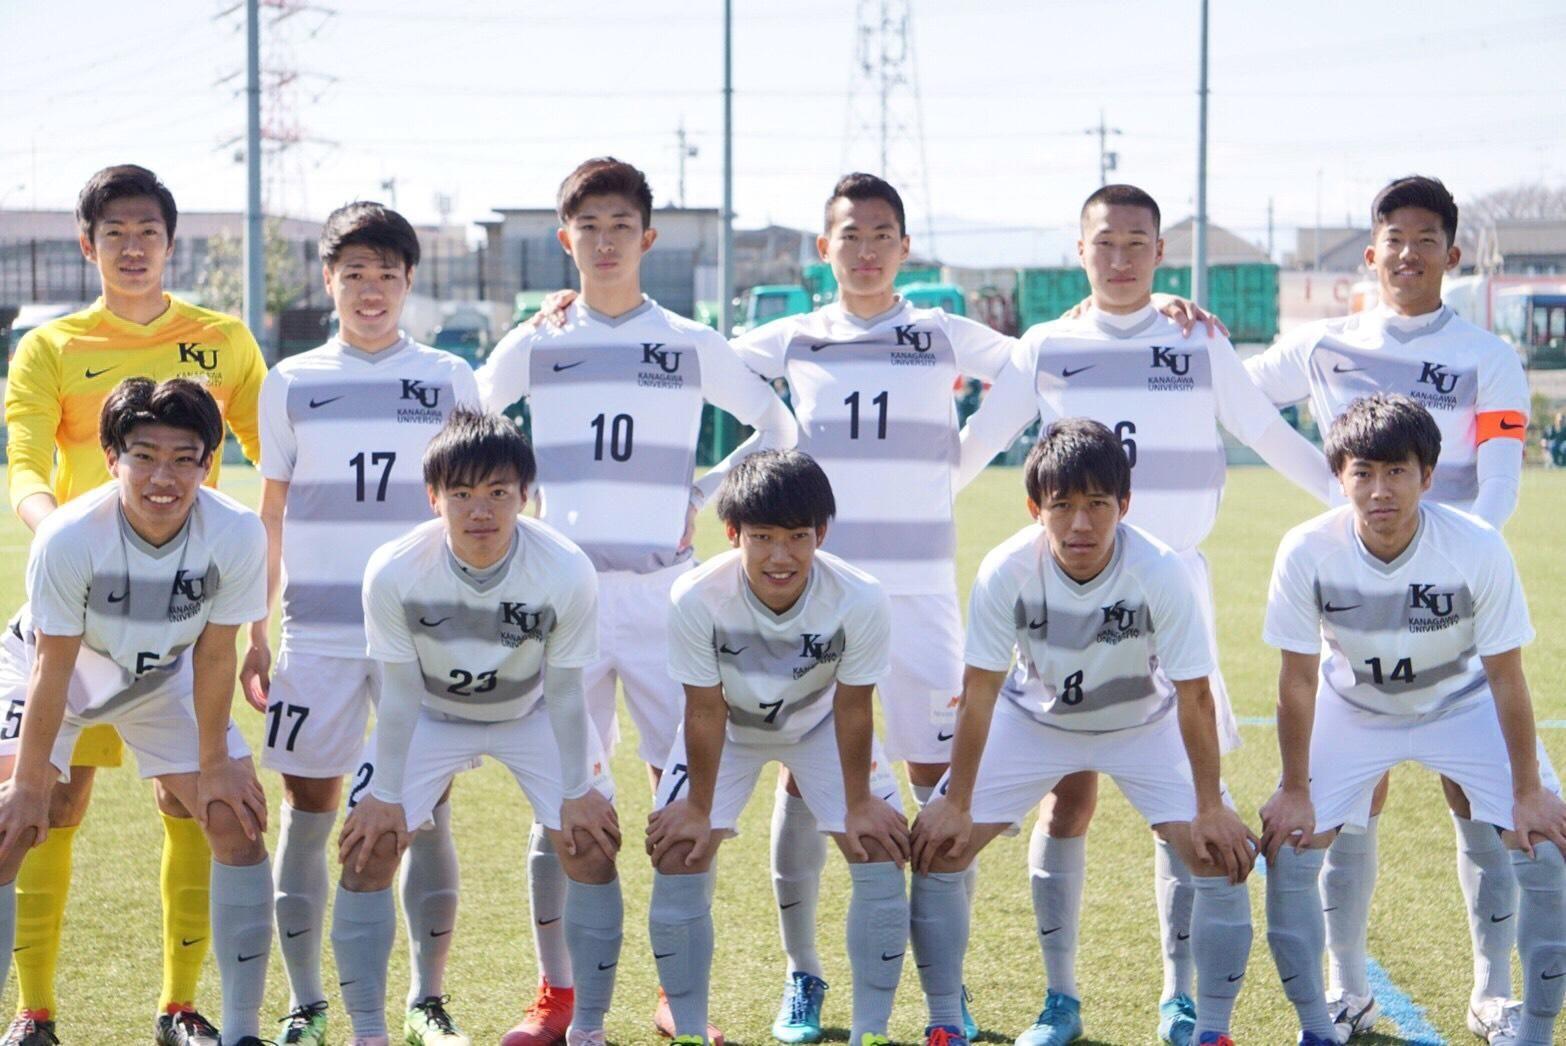 神奈川大学サッカー部 その他の公式戦 試合情報 19年 天皇杯神奈川県代表決定戦